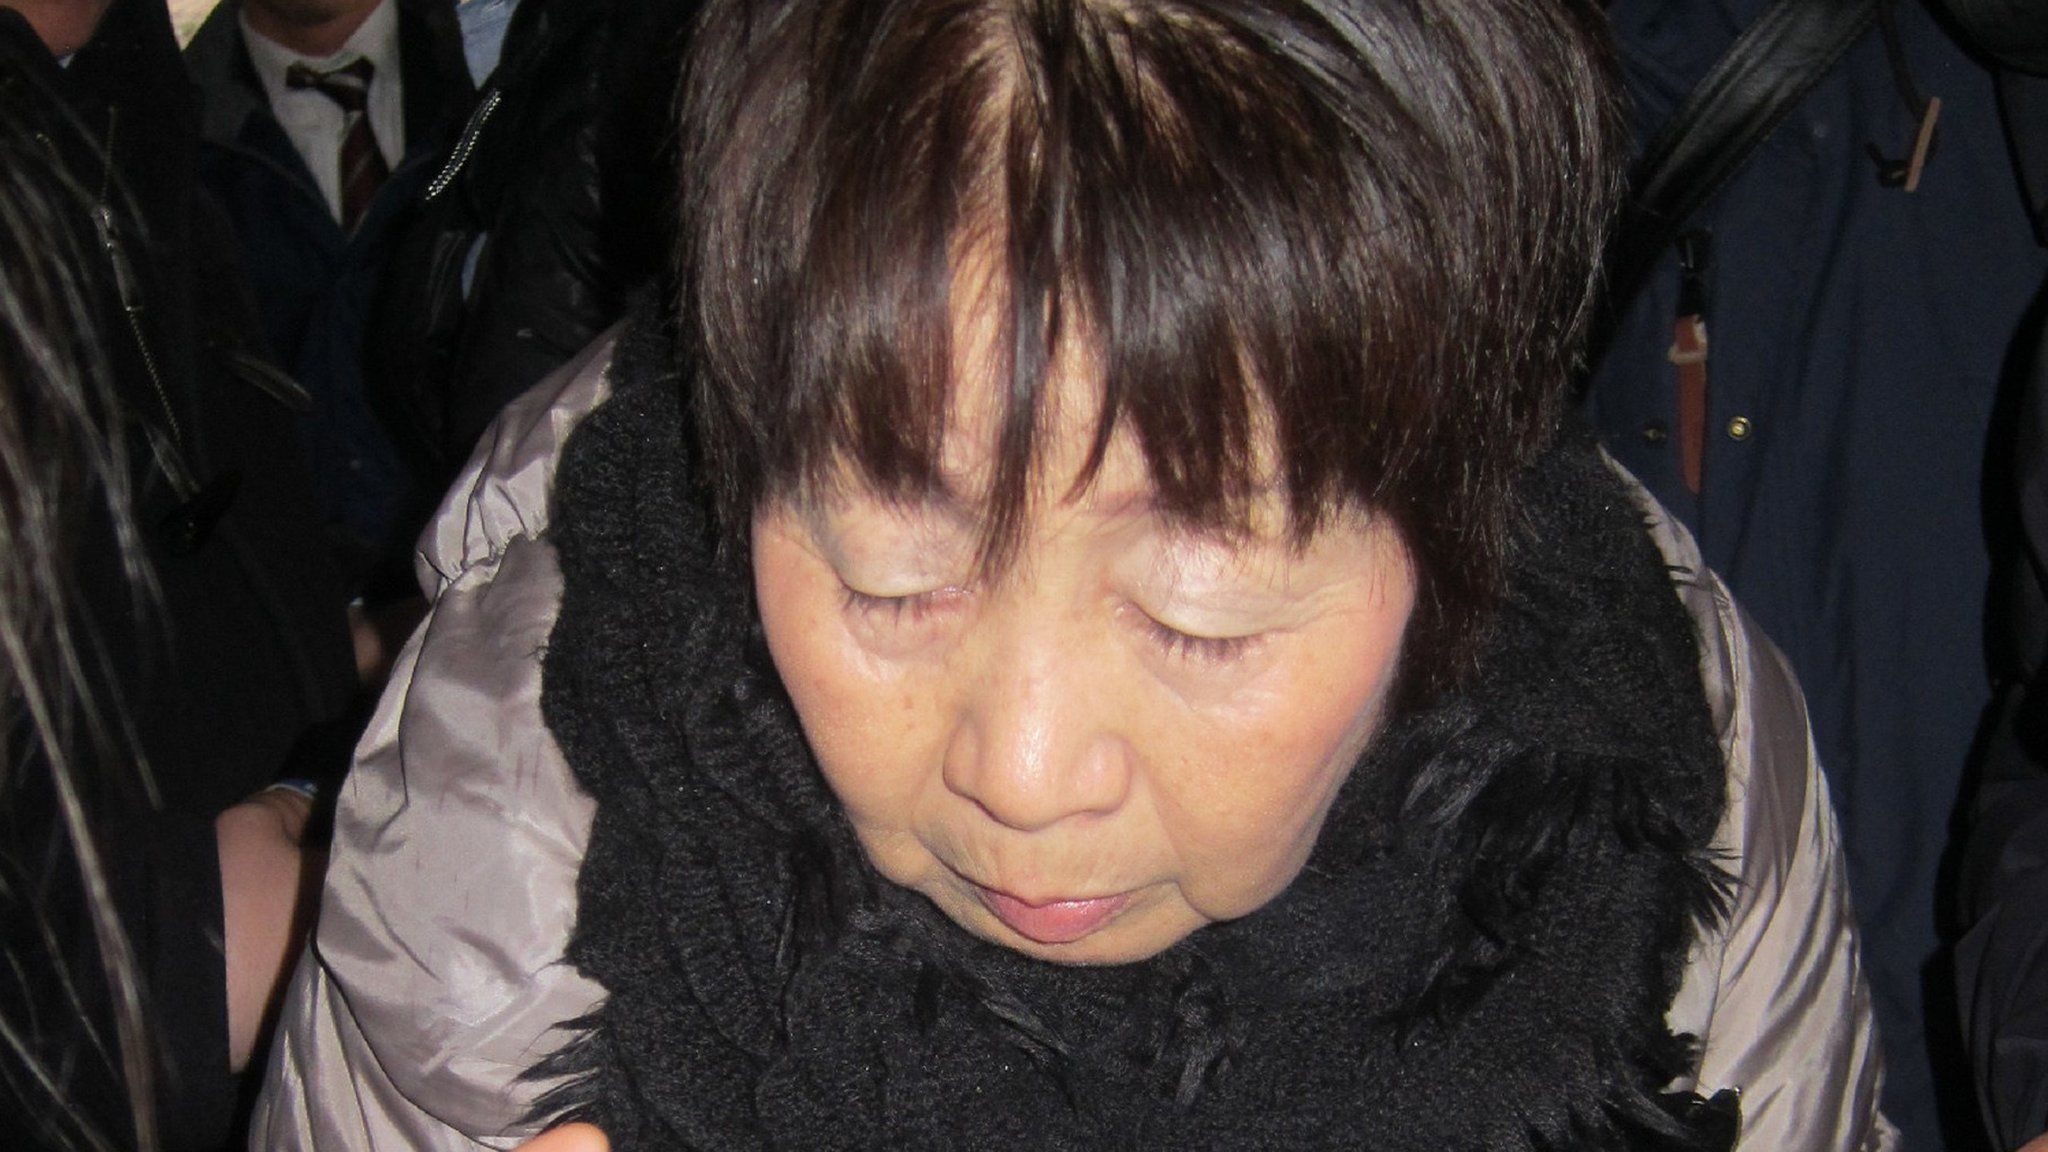 Chisako Kakehi in a file photo taken in March 2014